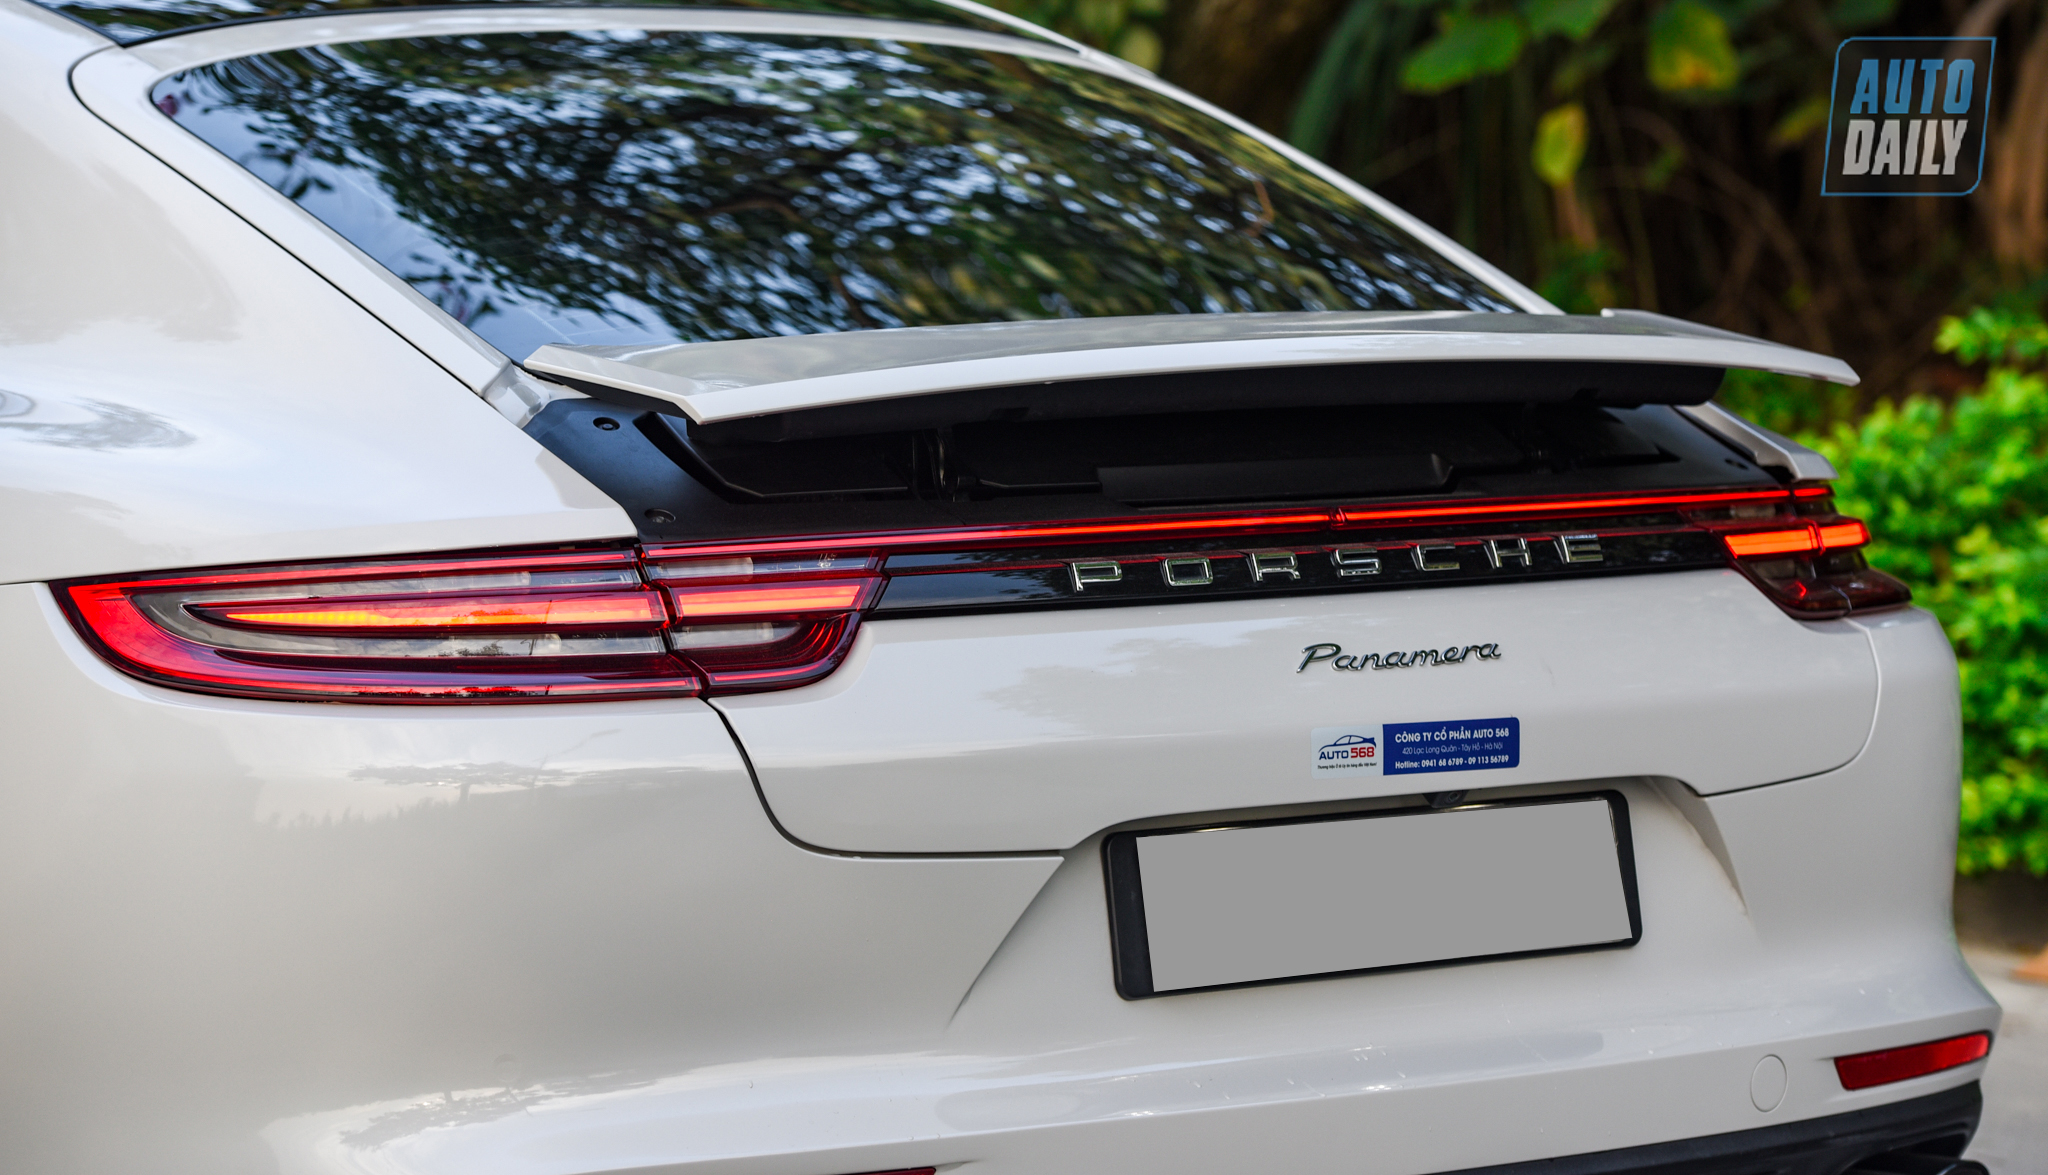 Sau 3 năm, Porsche Panamera được bán lại rẻ hơn gần 2 tỷ đồng dsc-2087.jpg